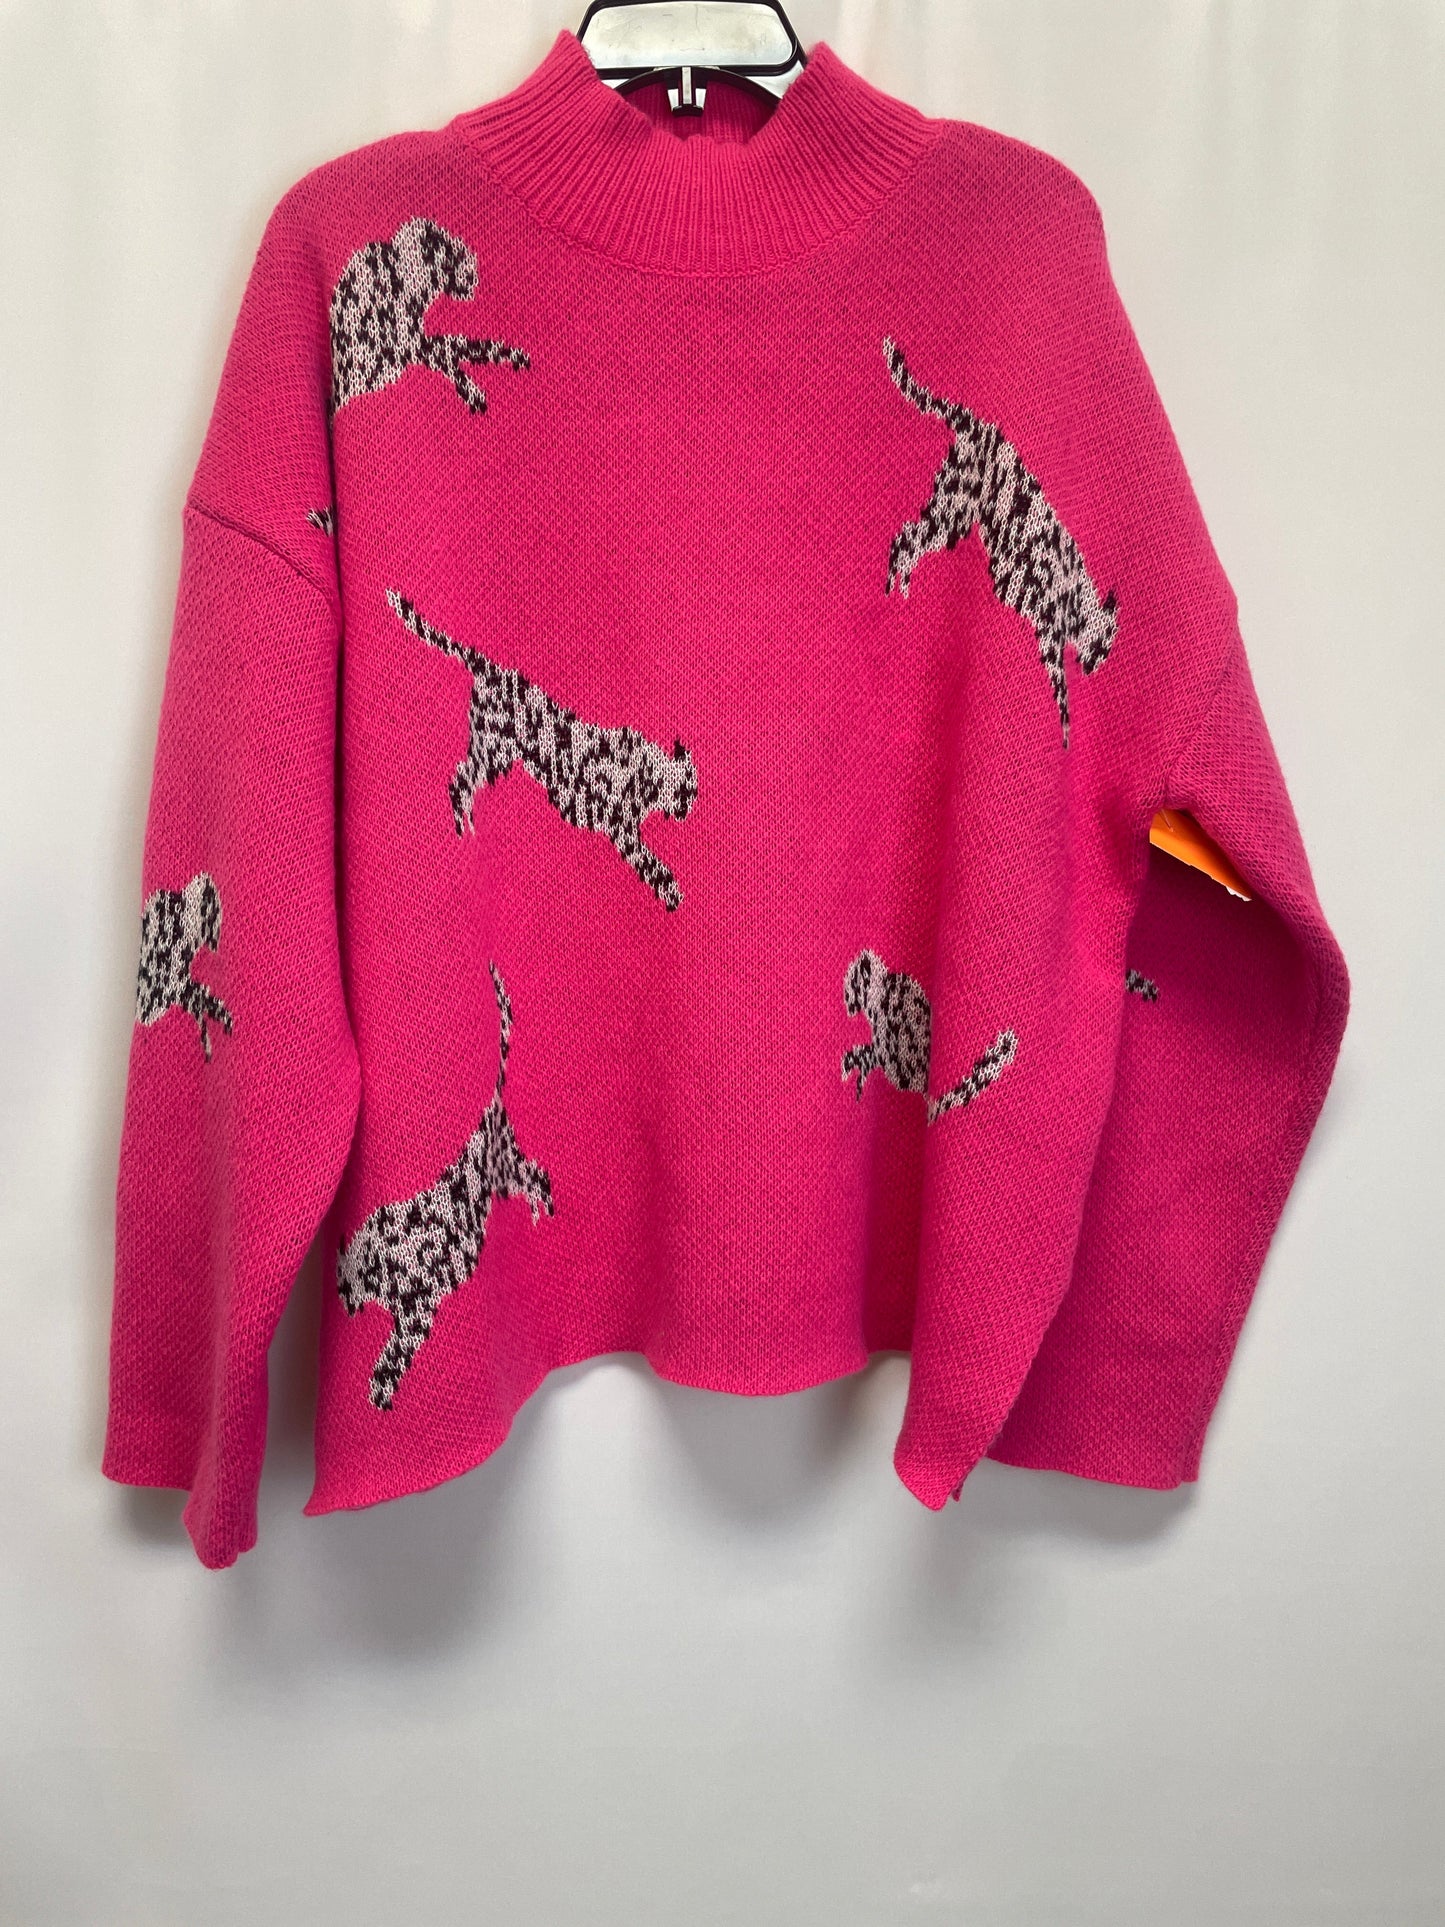 Sweater By Shein  Size: 3x